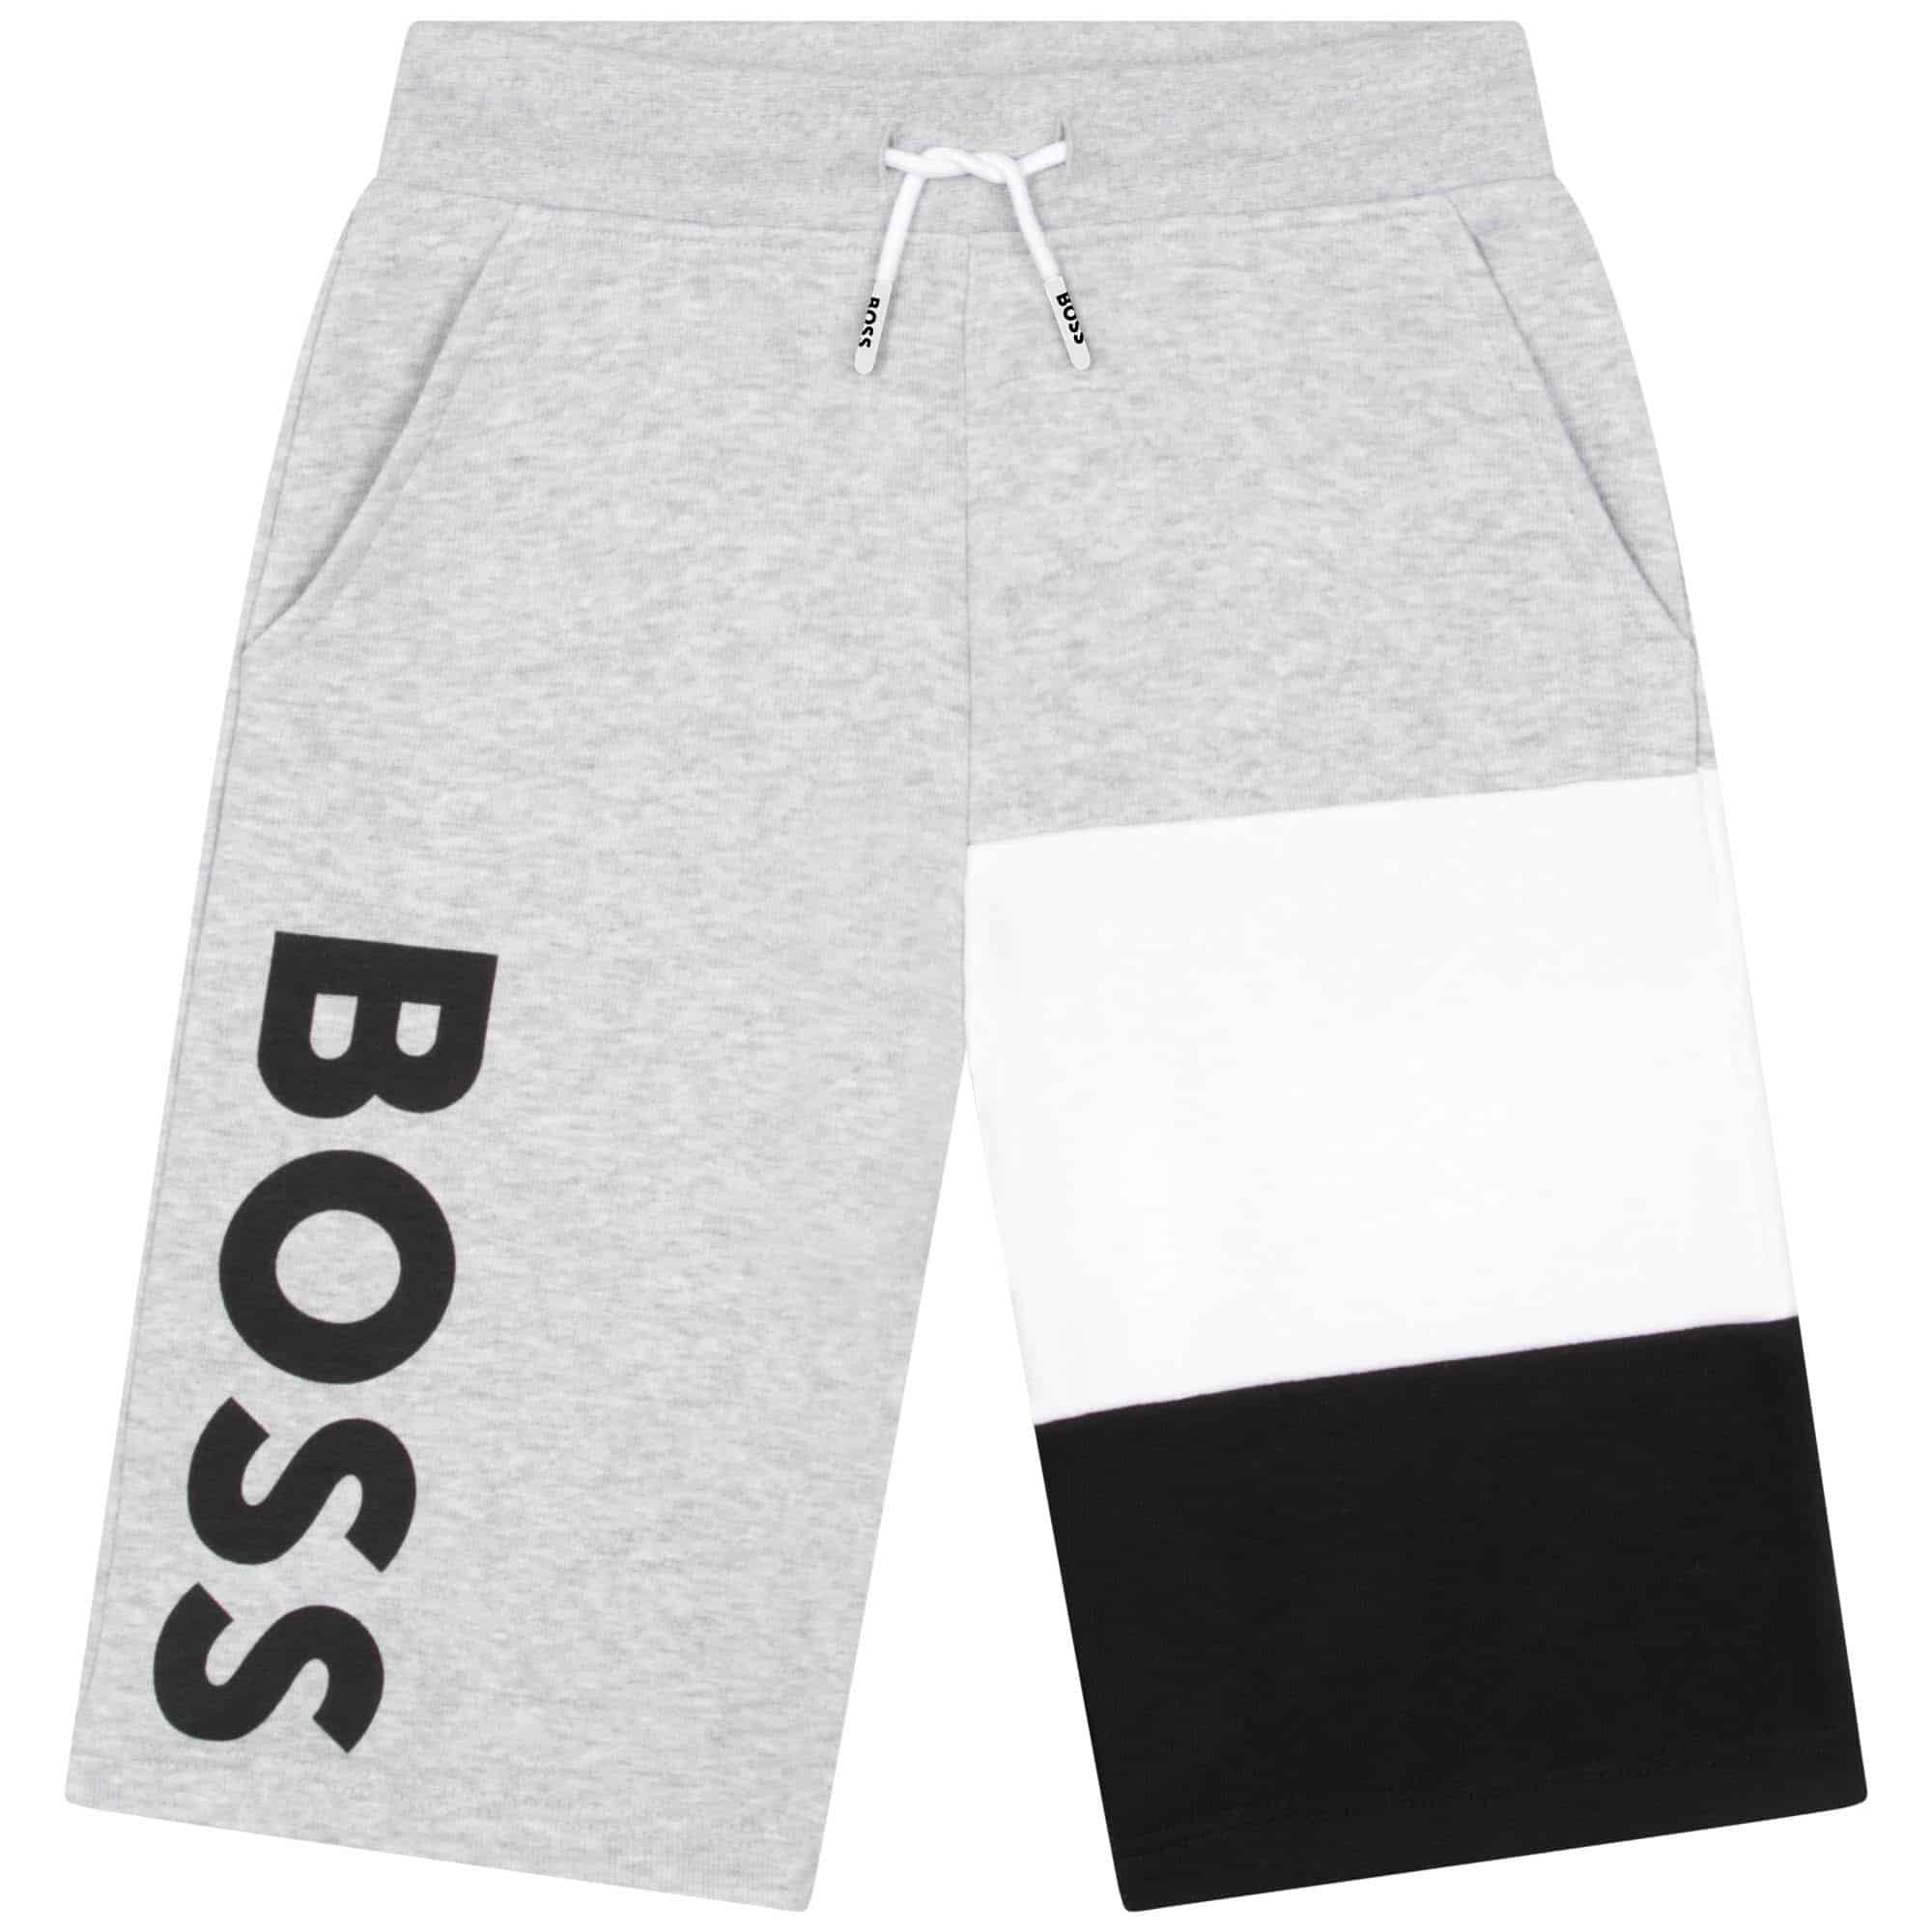 Boss boys grey shorts with large black logo